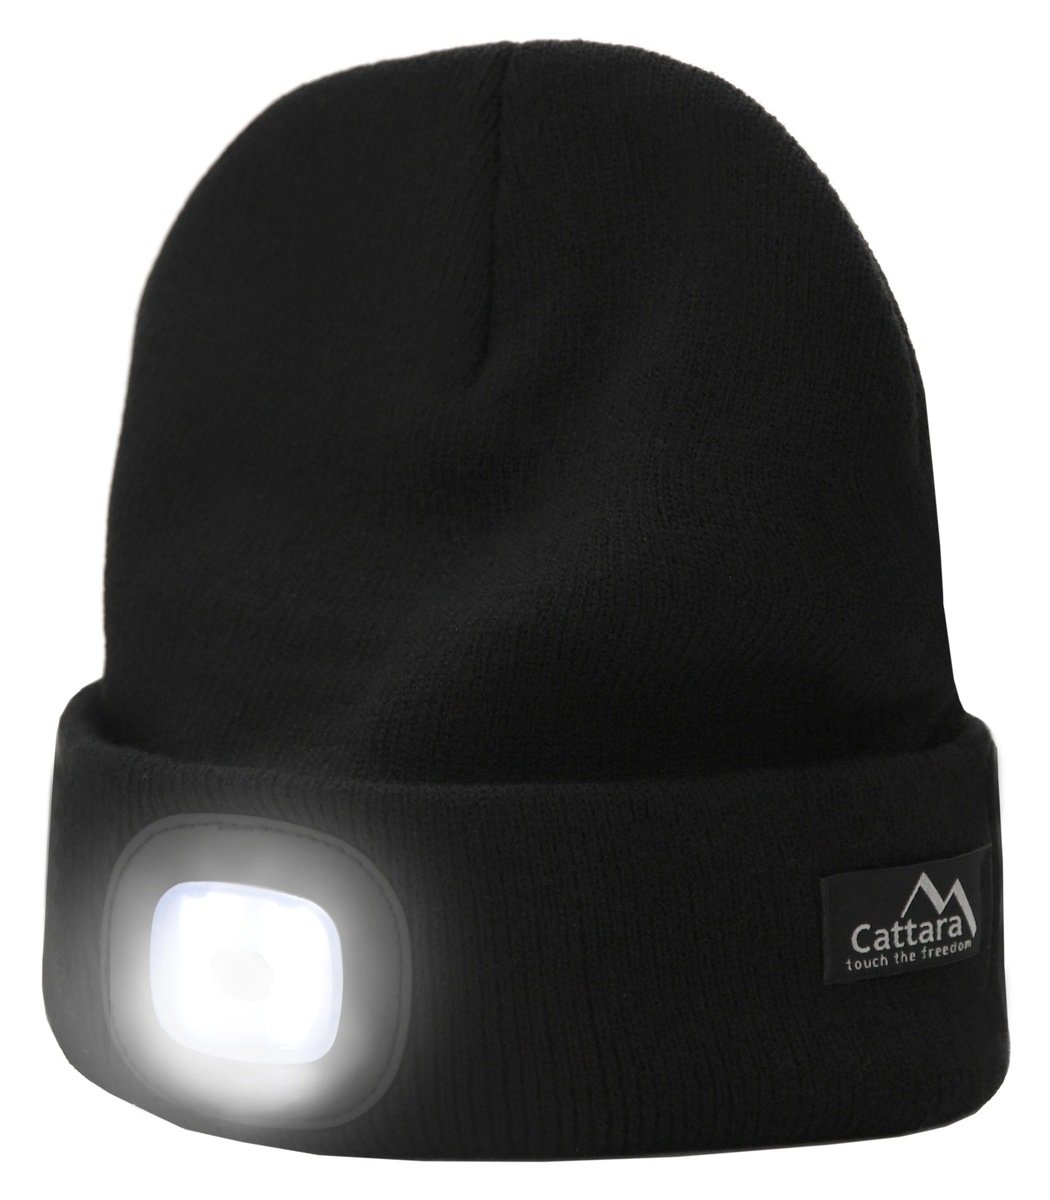 Cattara Black čepice s LED svítilnou a USB nabíjením